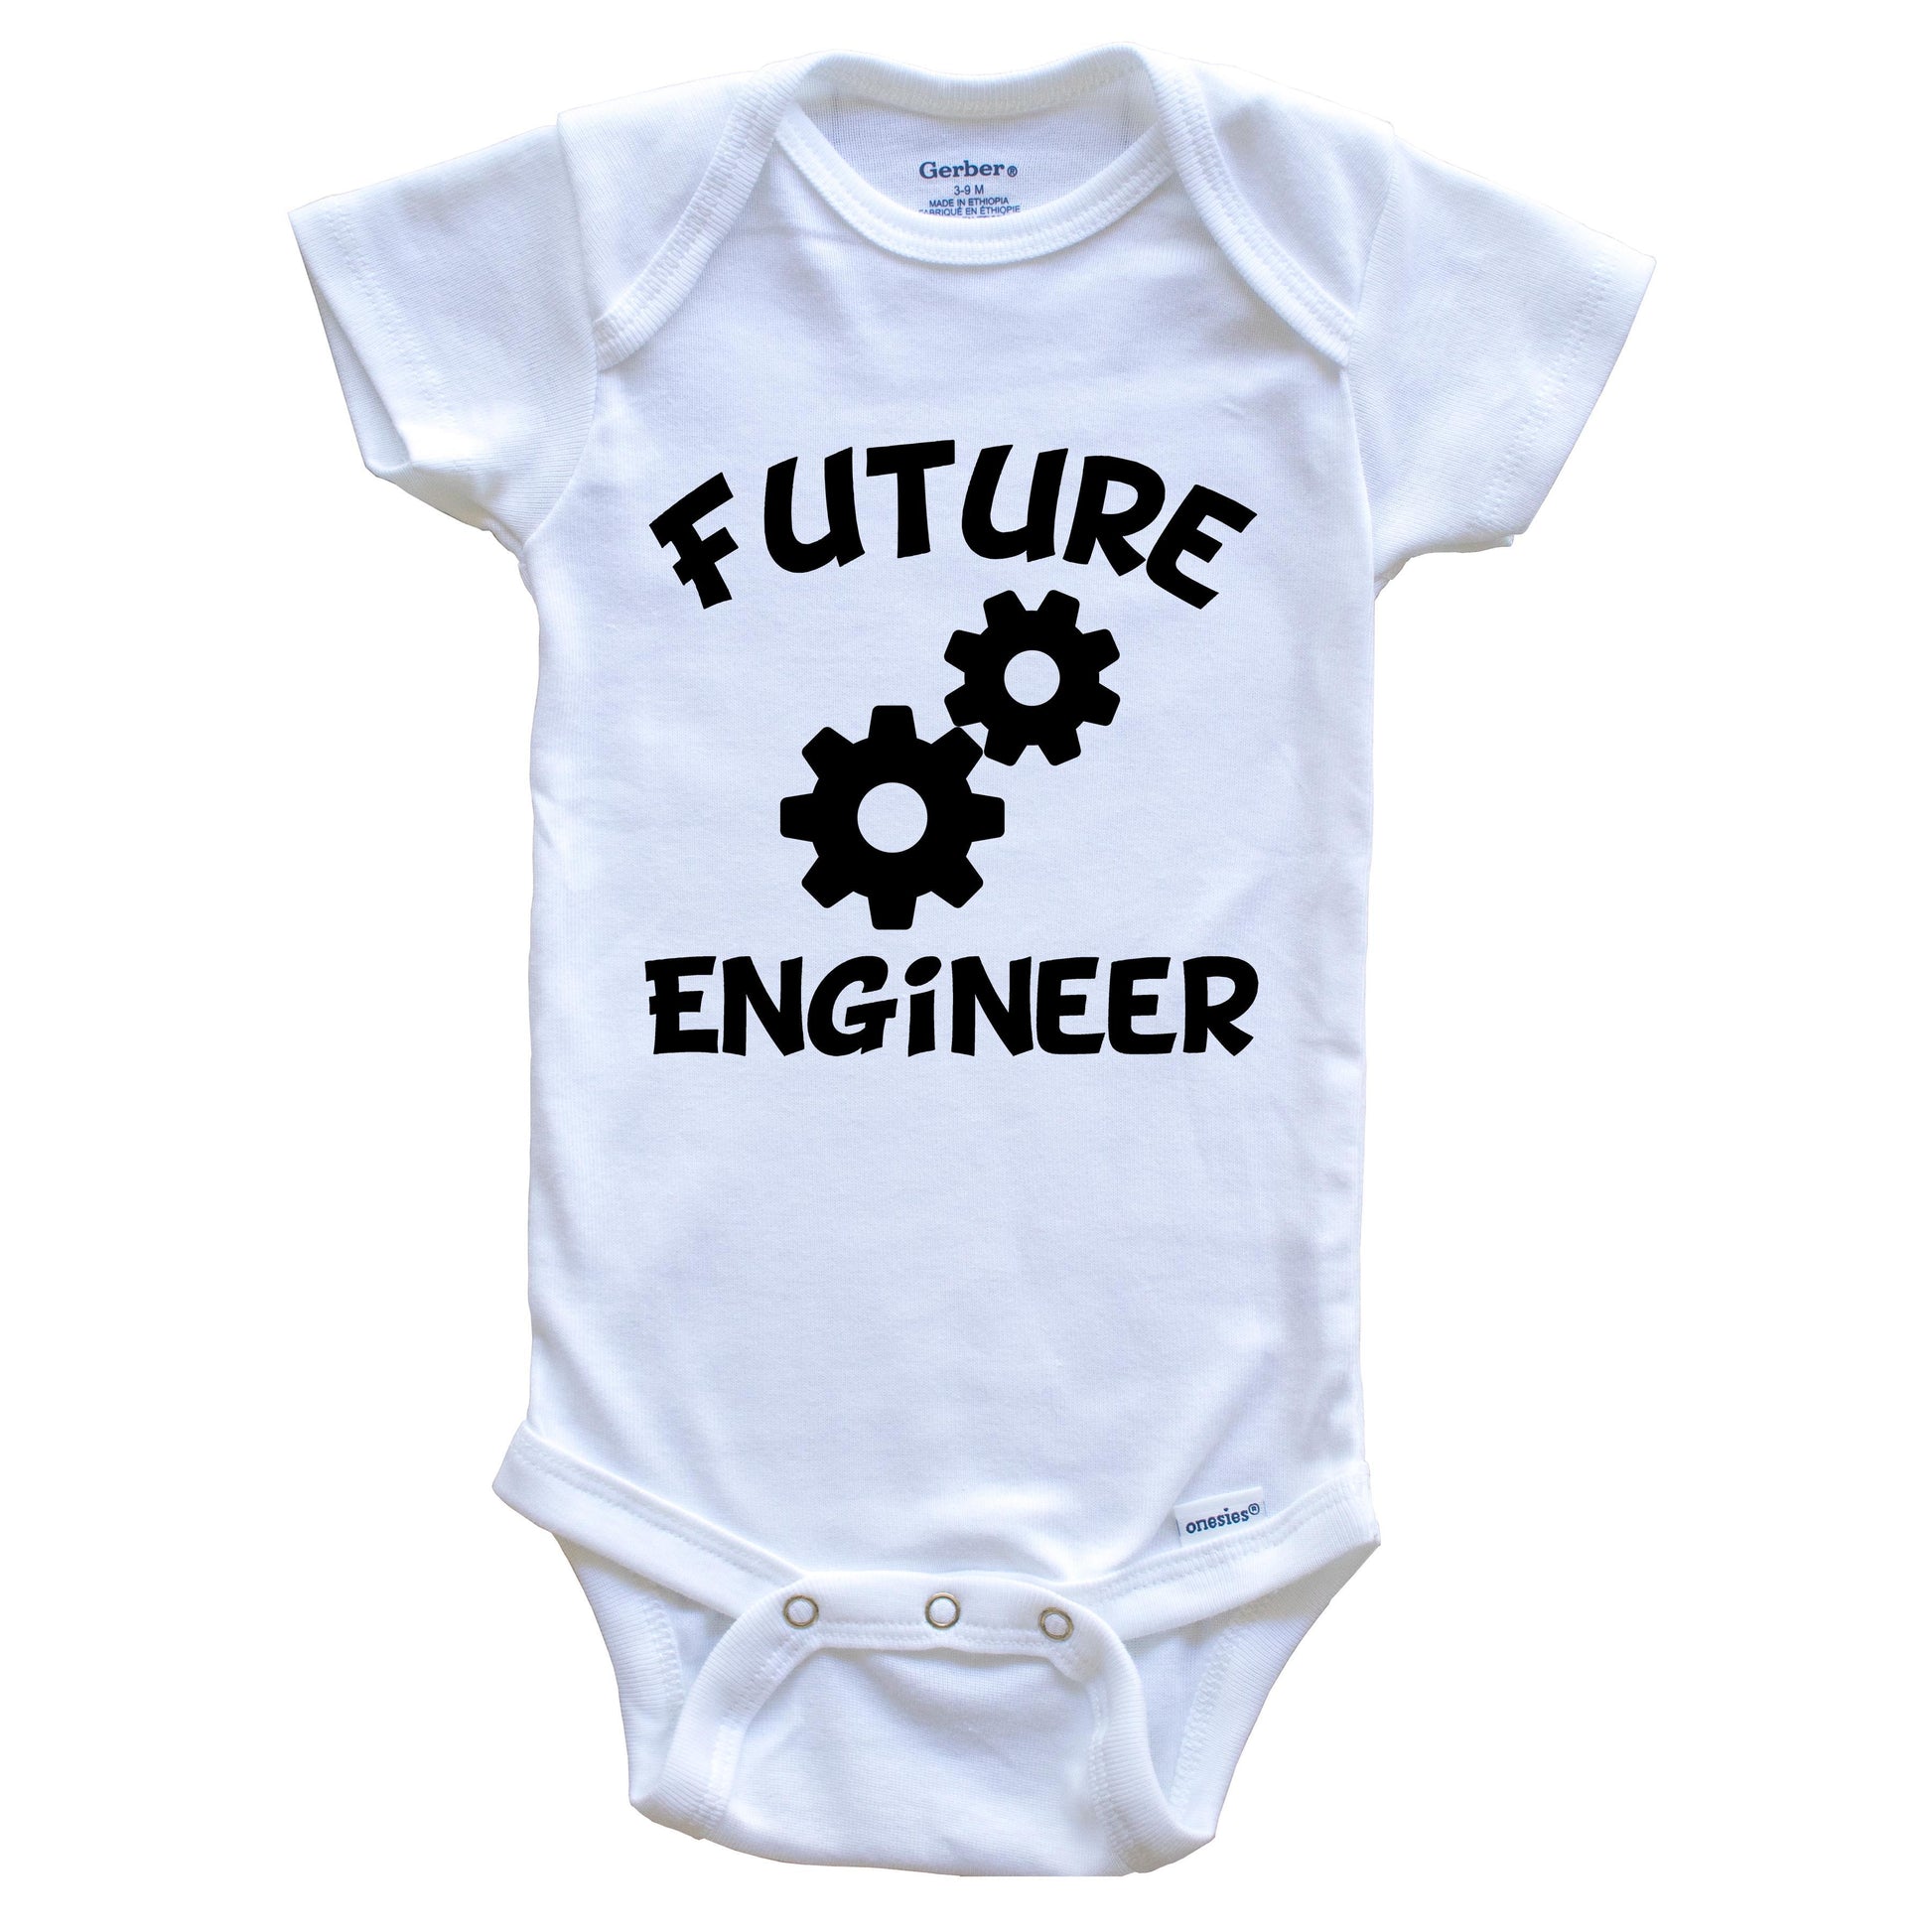 Future Engineer Cute Engineering Baby Onesie - One Piece Baby Bodysuit